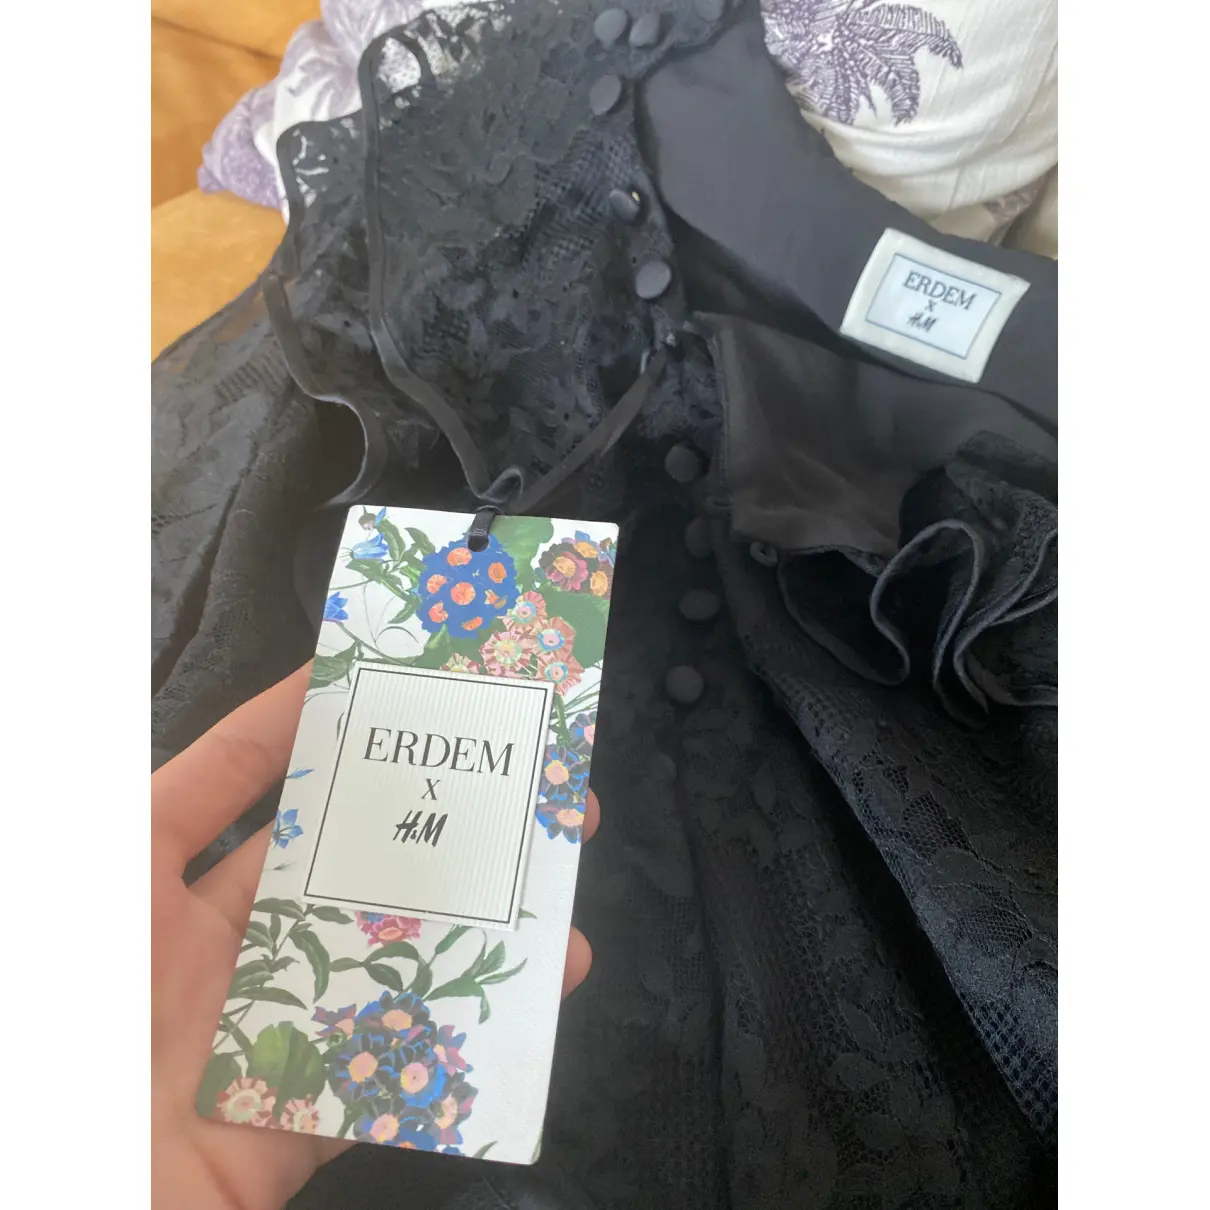 Buy Erdem x H&M Lace blouse online - Vintage